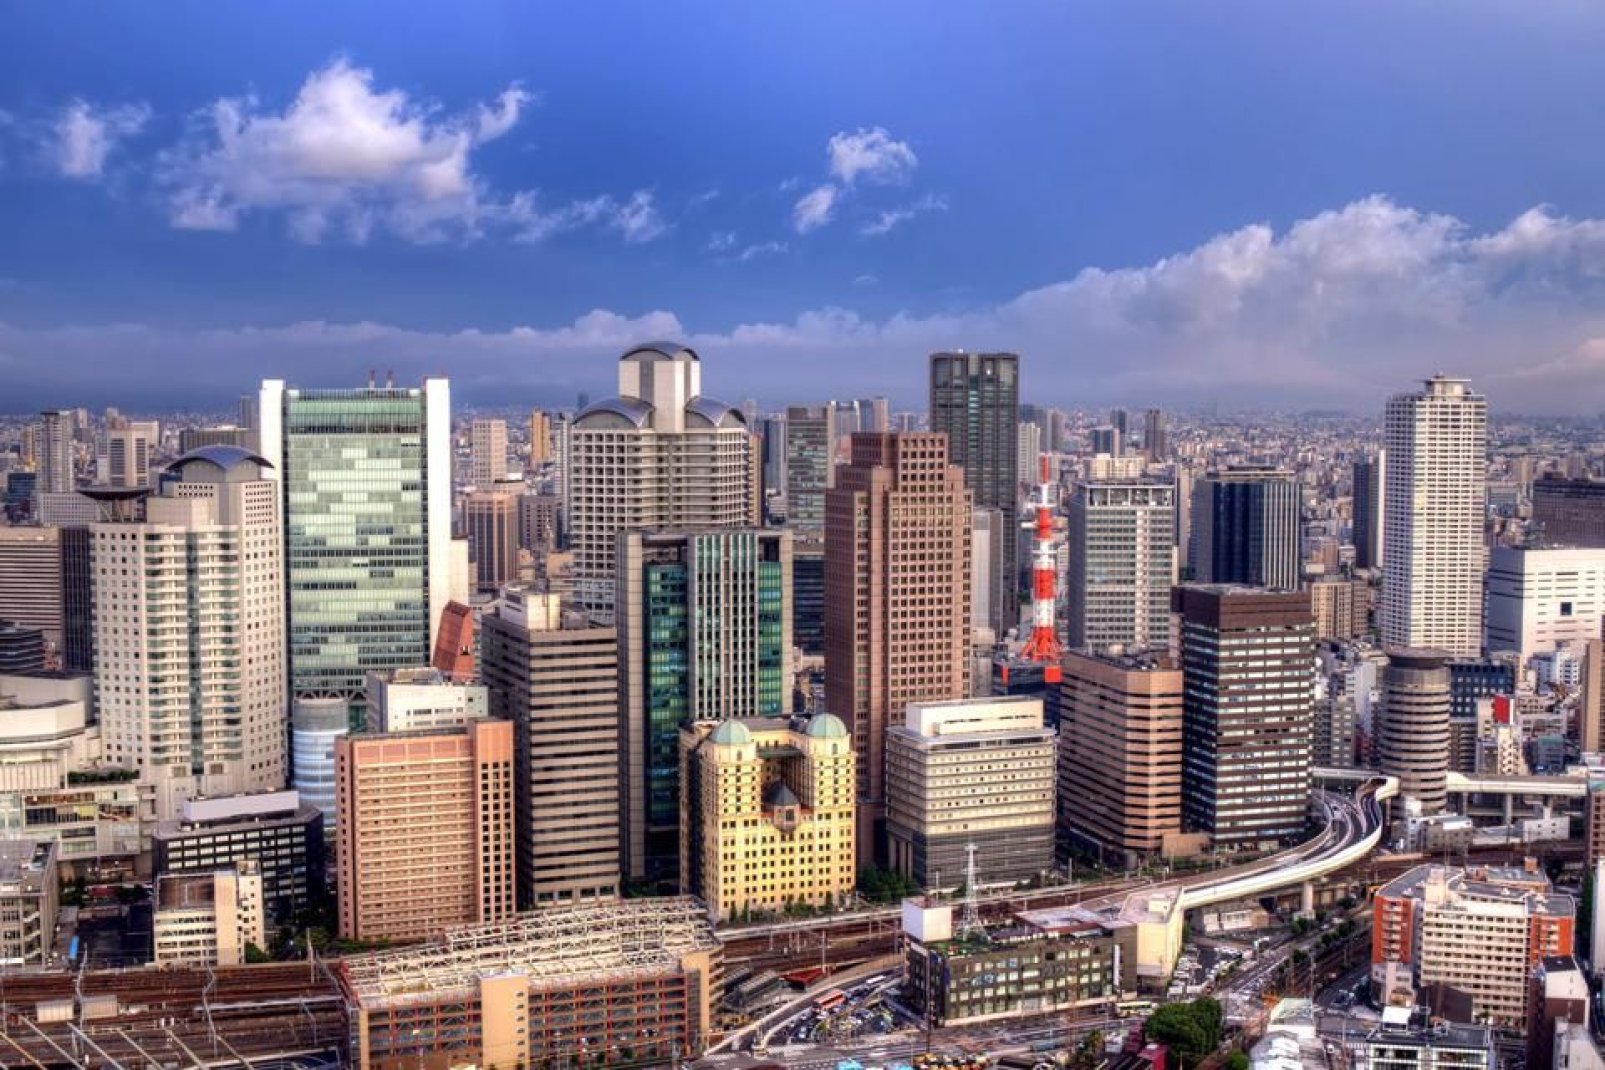 Principalement constitué de grands centres commerciaux et de gratte-ciel, Umeda concentre banques, bureaux et hôtels.